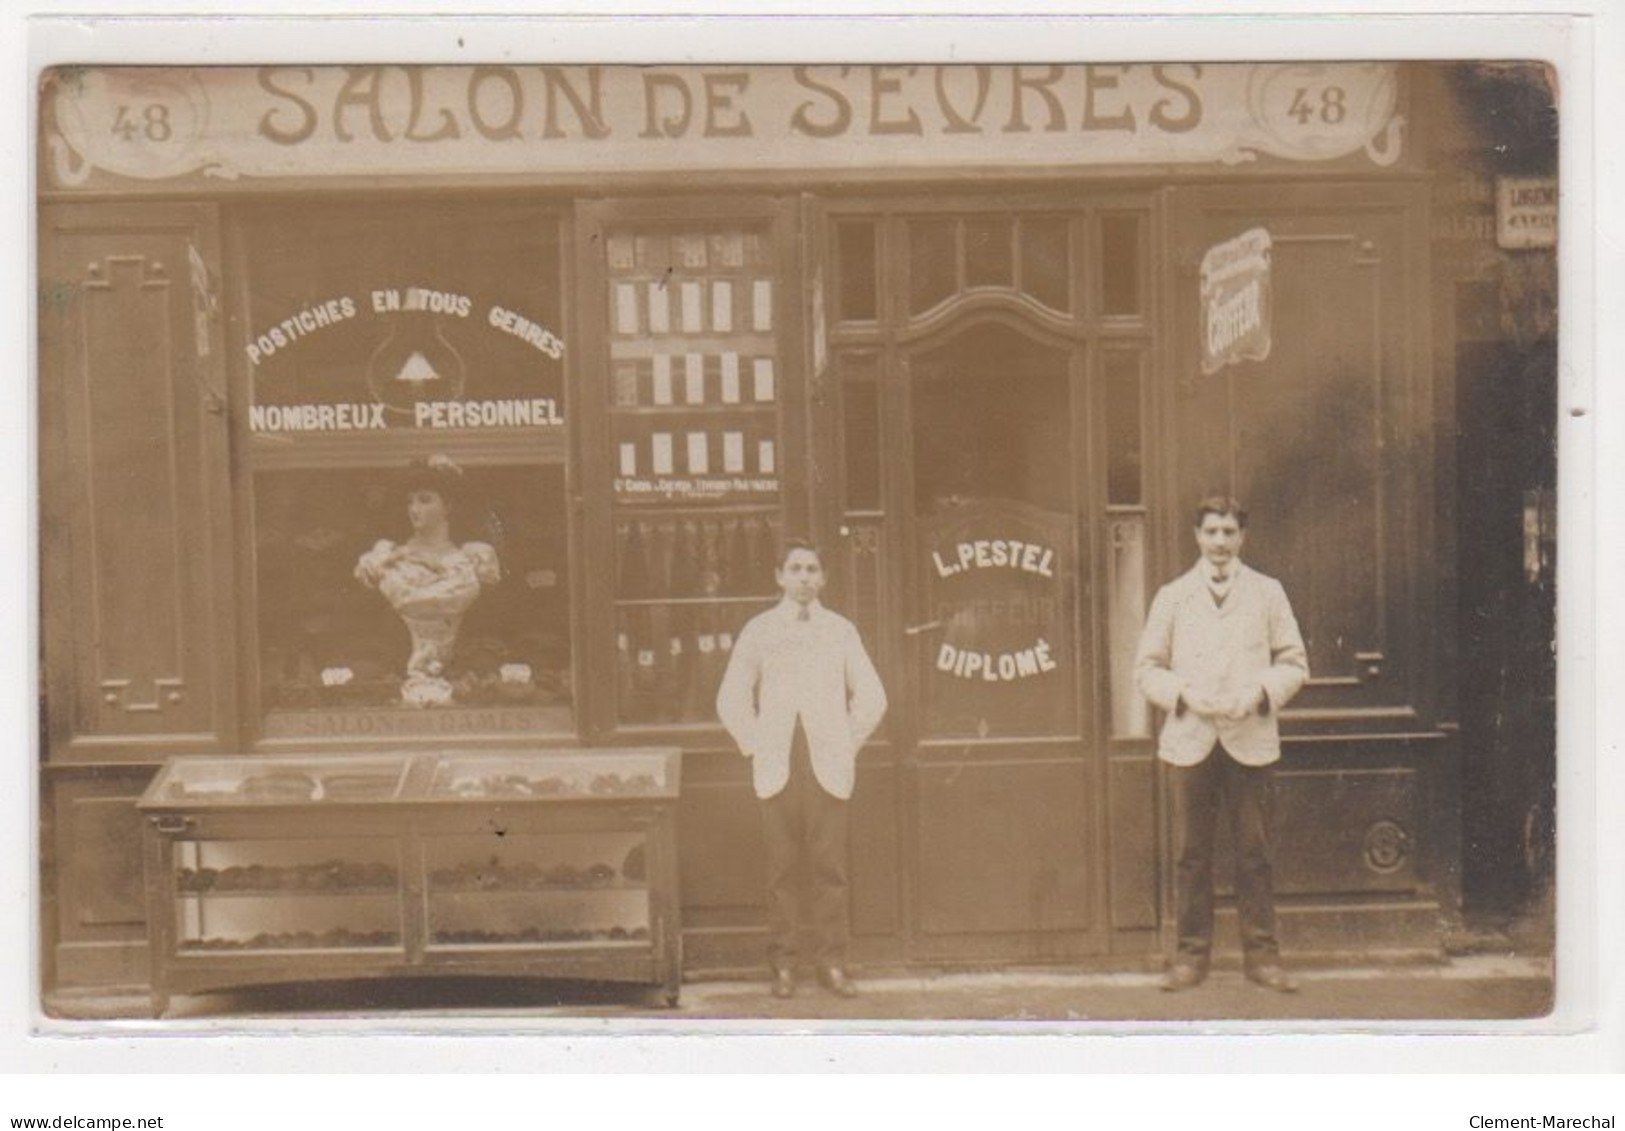 PARIS : Carte Photo Du Salon De Coiffure De Sevres (PESTEL - Coiffeur) Au 48 Rue De Sevres - Bon état - District 07